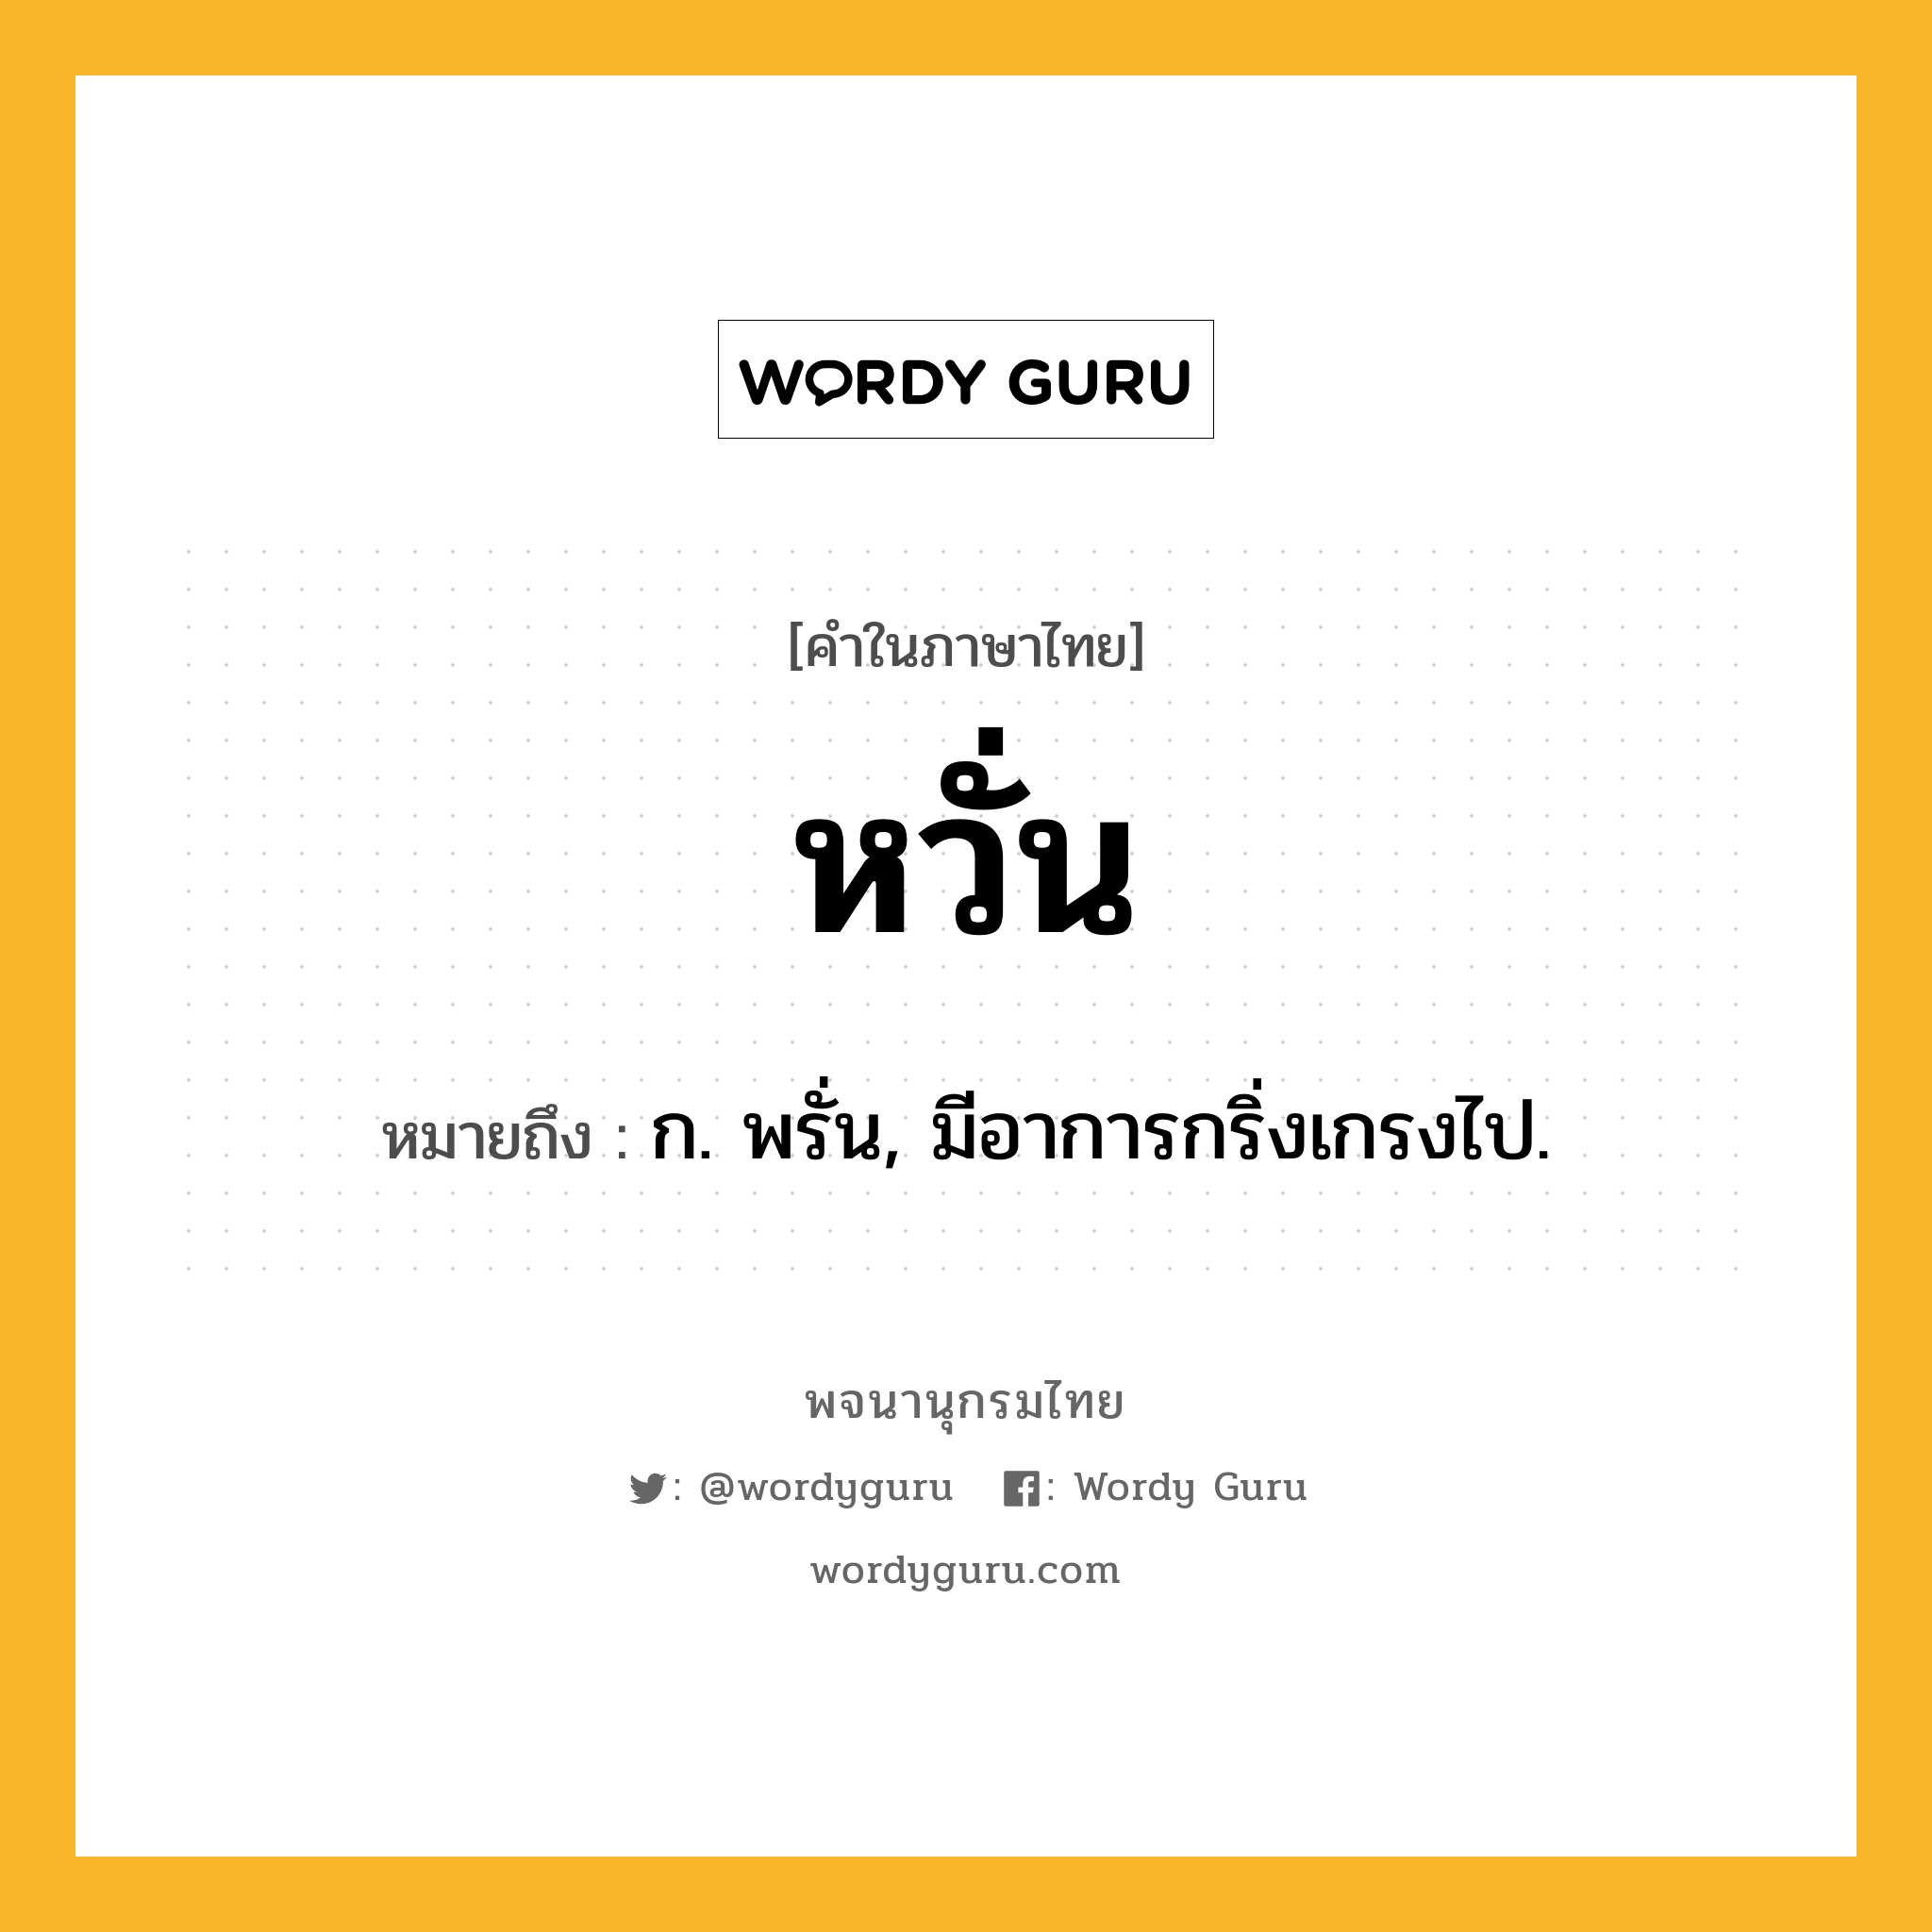 หวั่น ความหมาย หมายถึงอะไร?, คำในภาษาไทย หวั่น หมายถึง ก. พรั่น, มีอาการกริ่งเกรงไป.